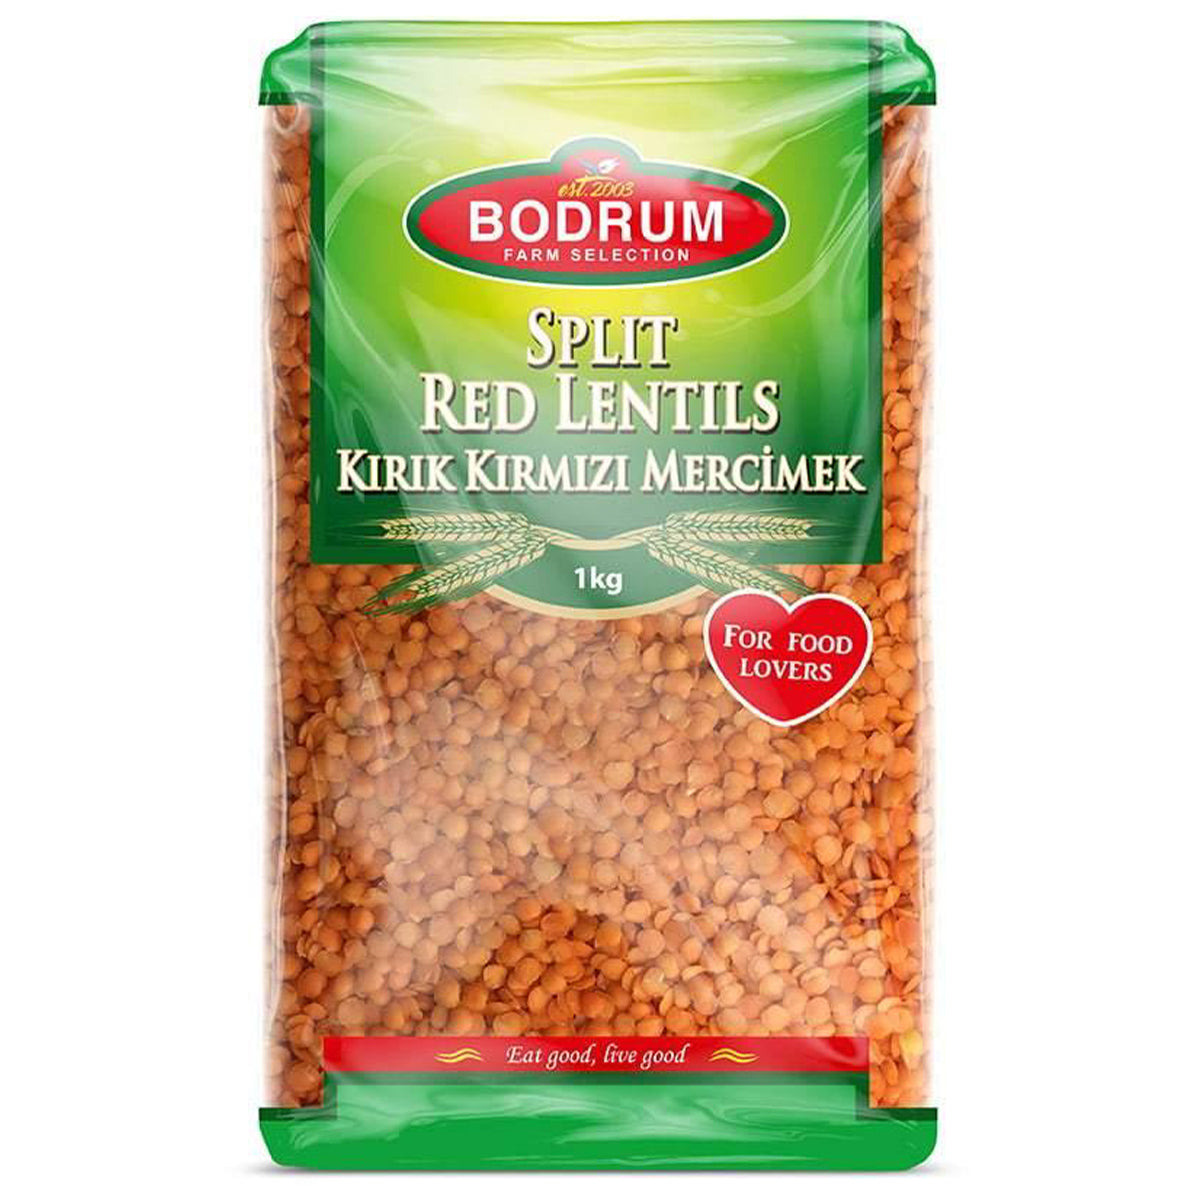 Split Bodrum red lentils in a bag.